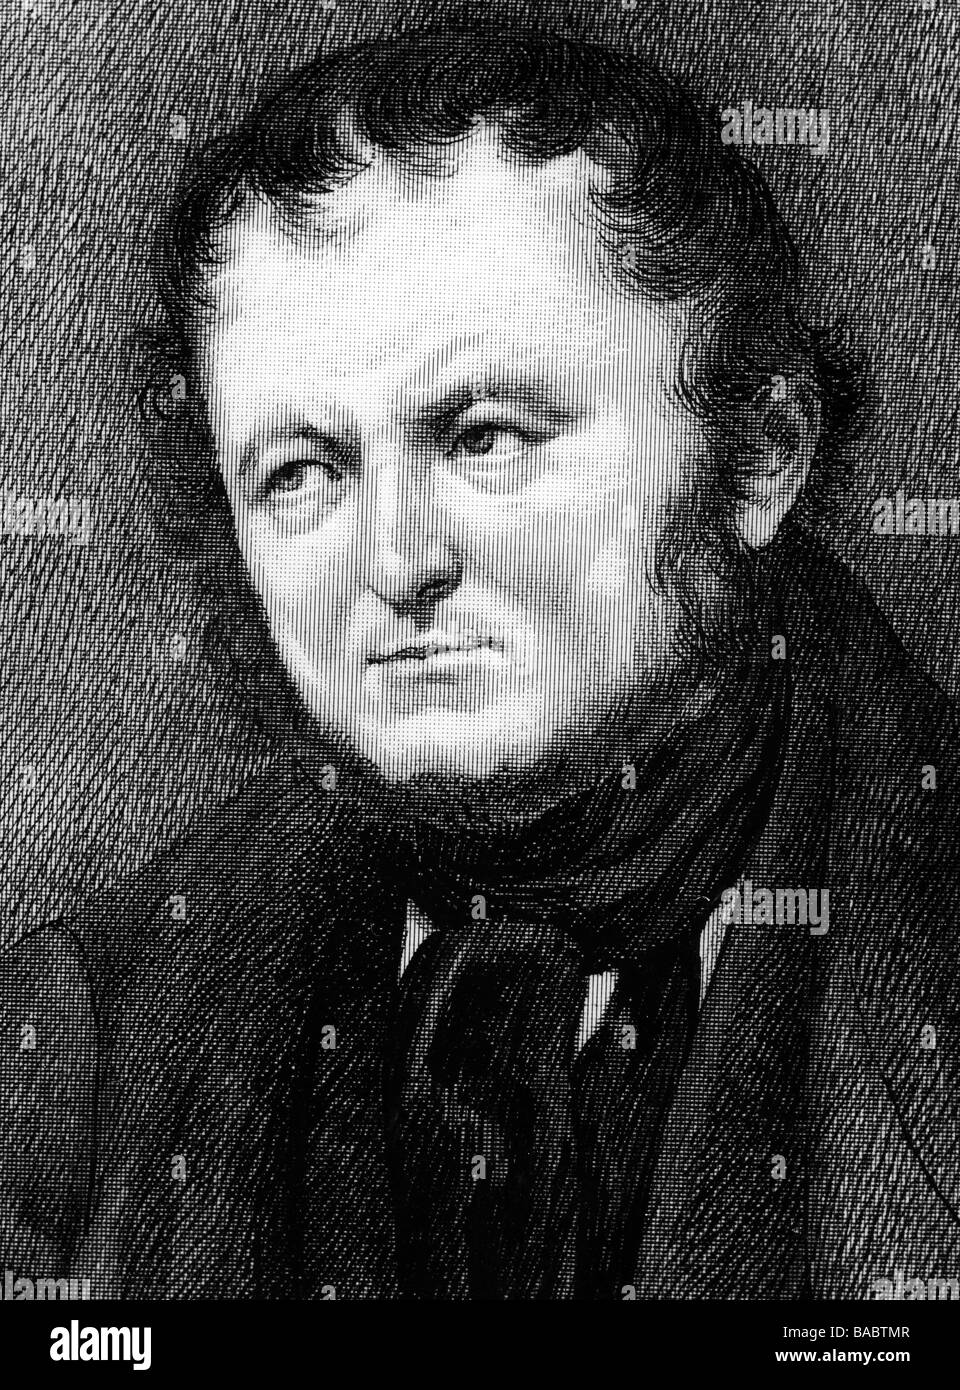 Stendhal (Marie-Henri Beyle), 23.1.1783 - 23.3.1842, französischer Autor/ Schriftsteller, Porträt, nach Originalzeichnung auf skaliertem Papier  Stockfotografie - Alamy